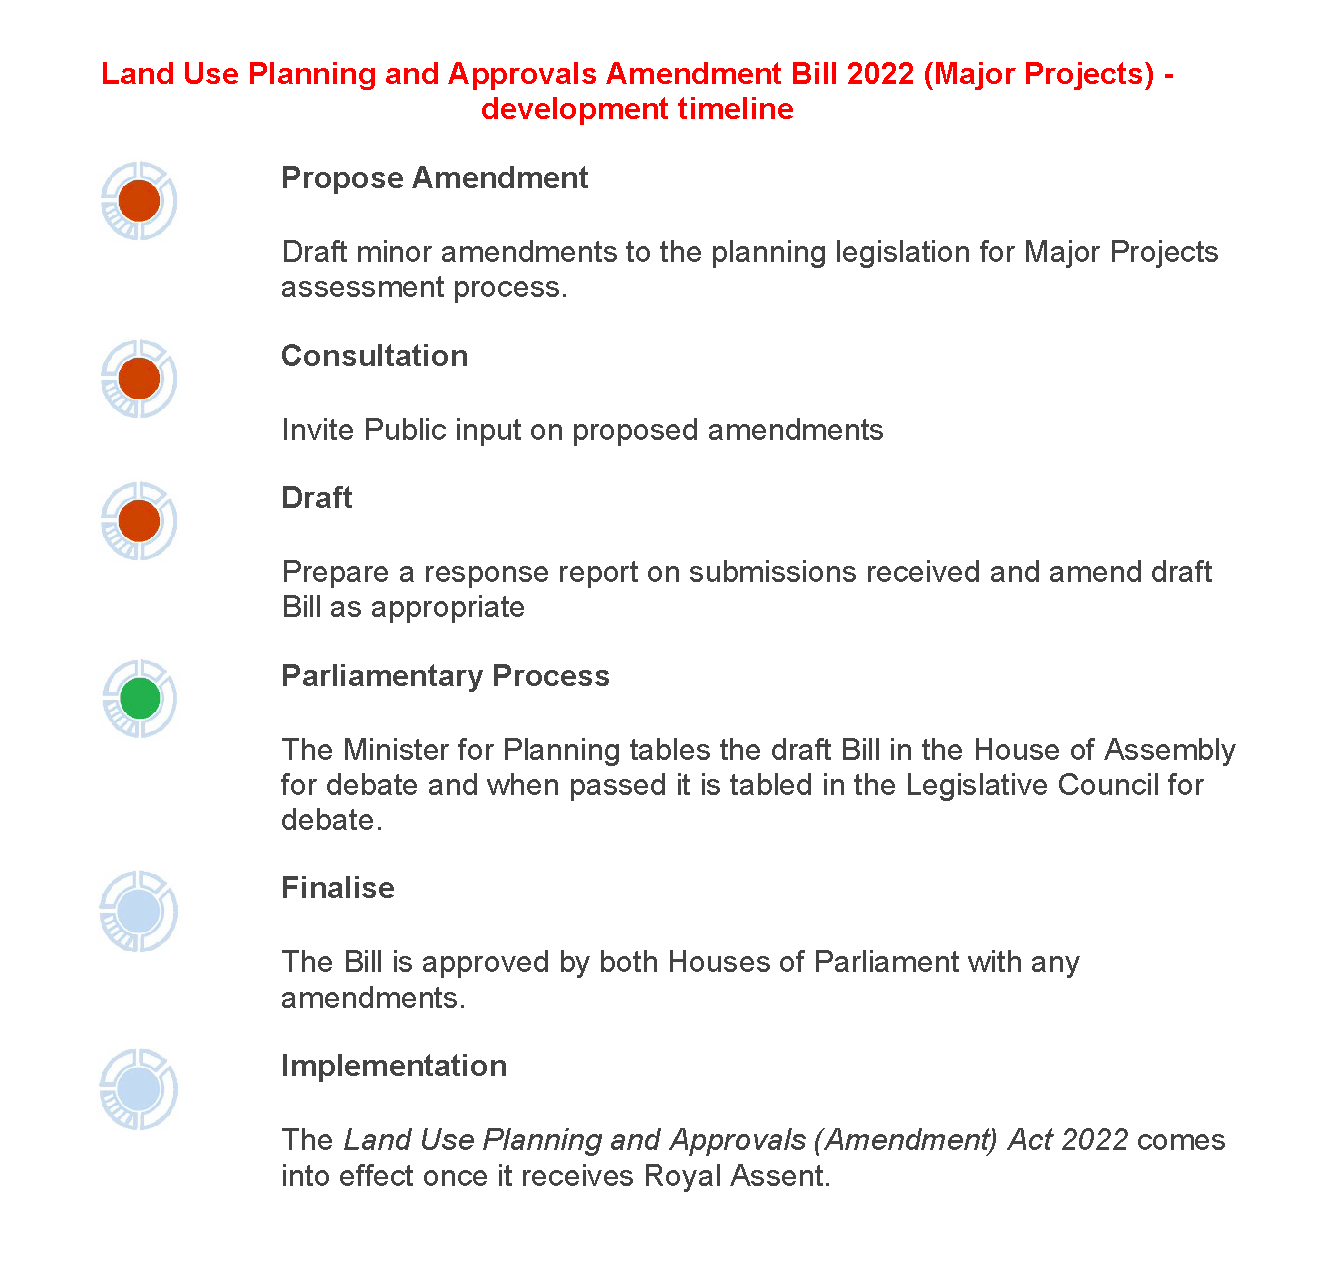 LUPAA Amendments Bill 2022 timeline